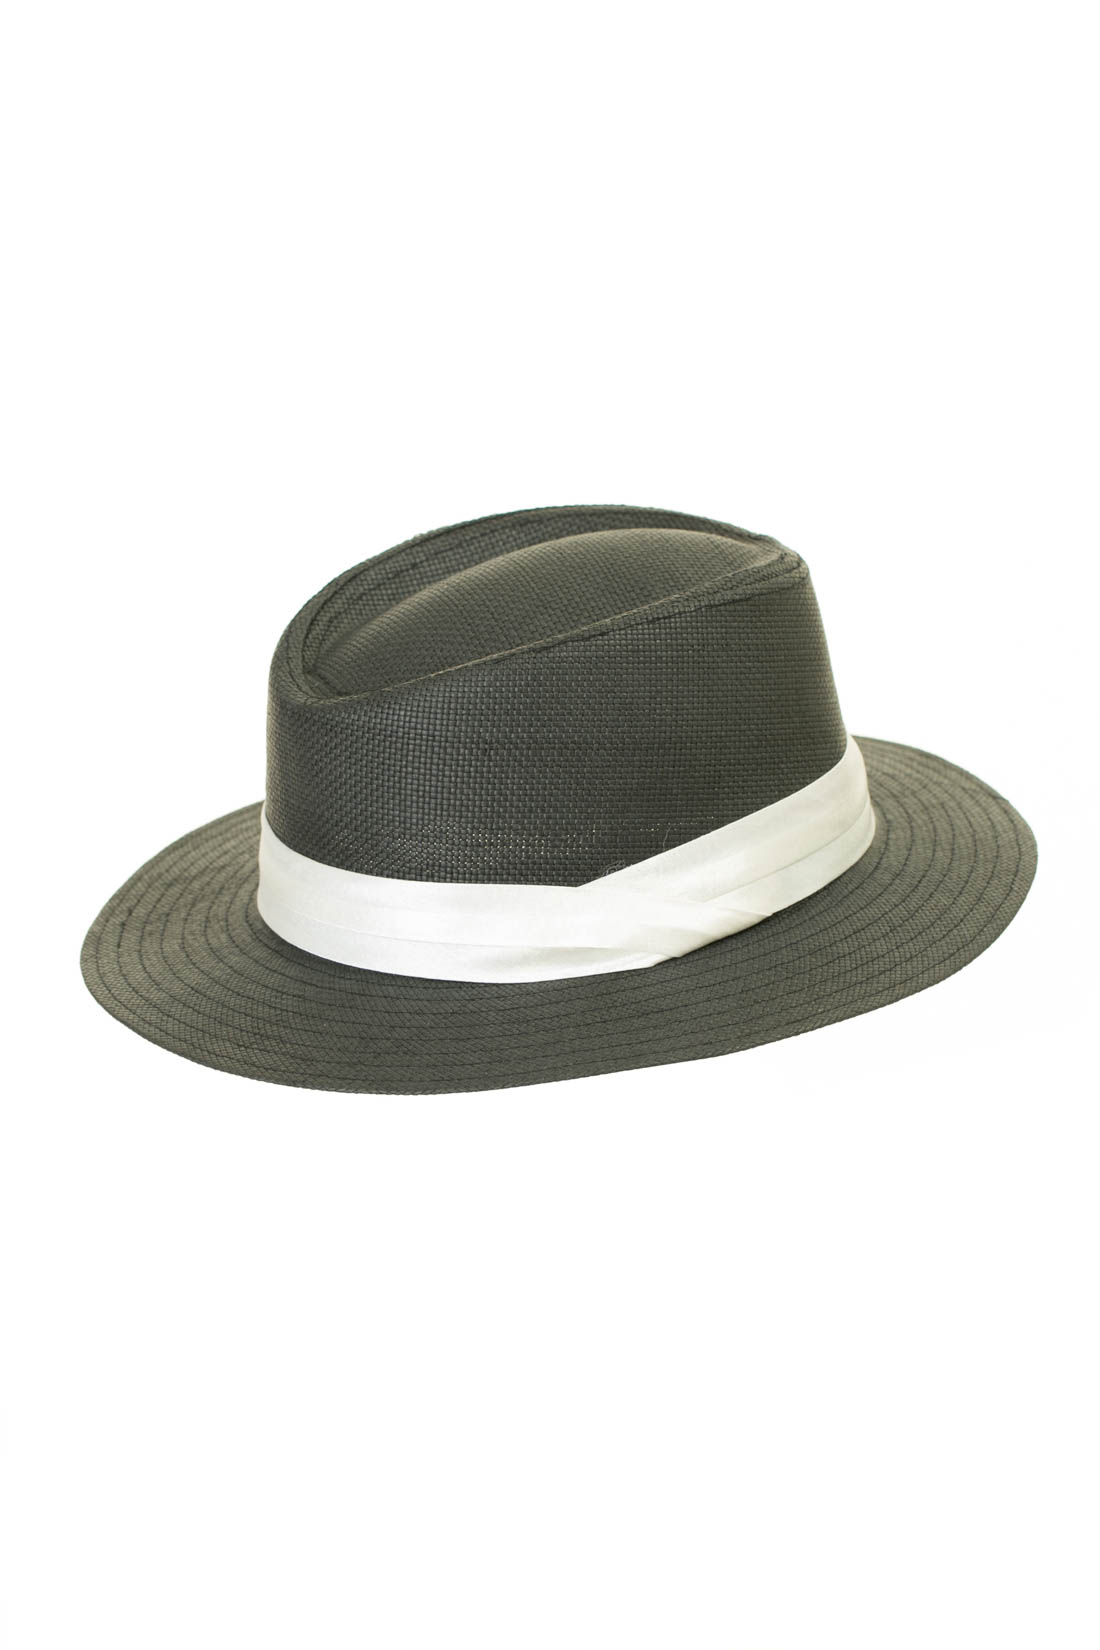 Шляпа с белой лентой (арт. baon B347005), размер 54-56, цвет черный